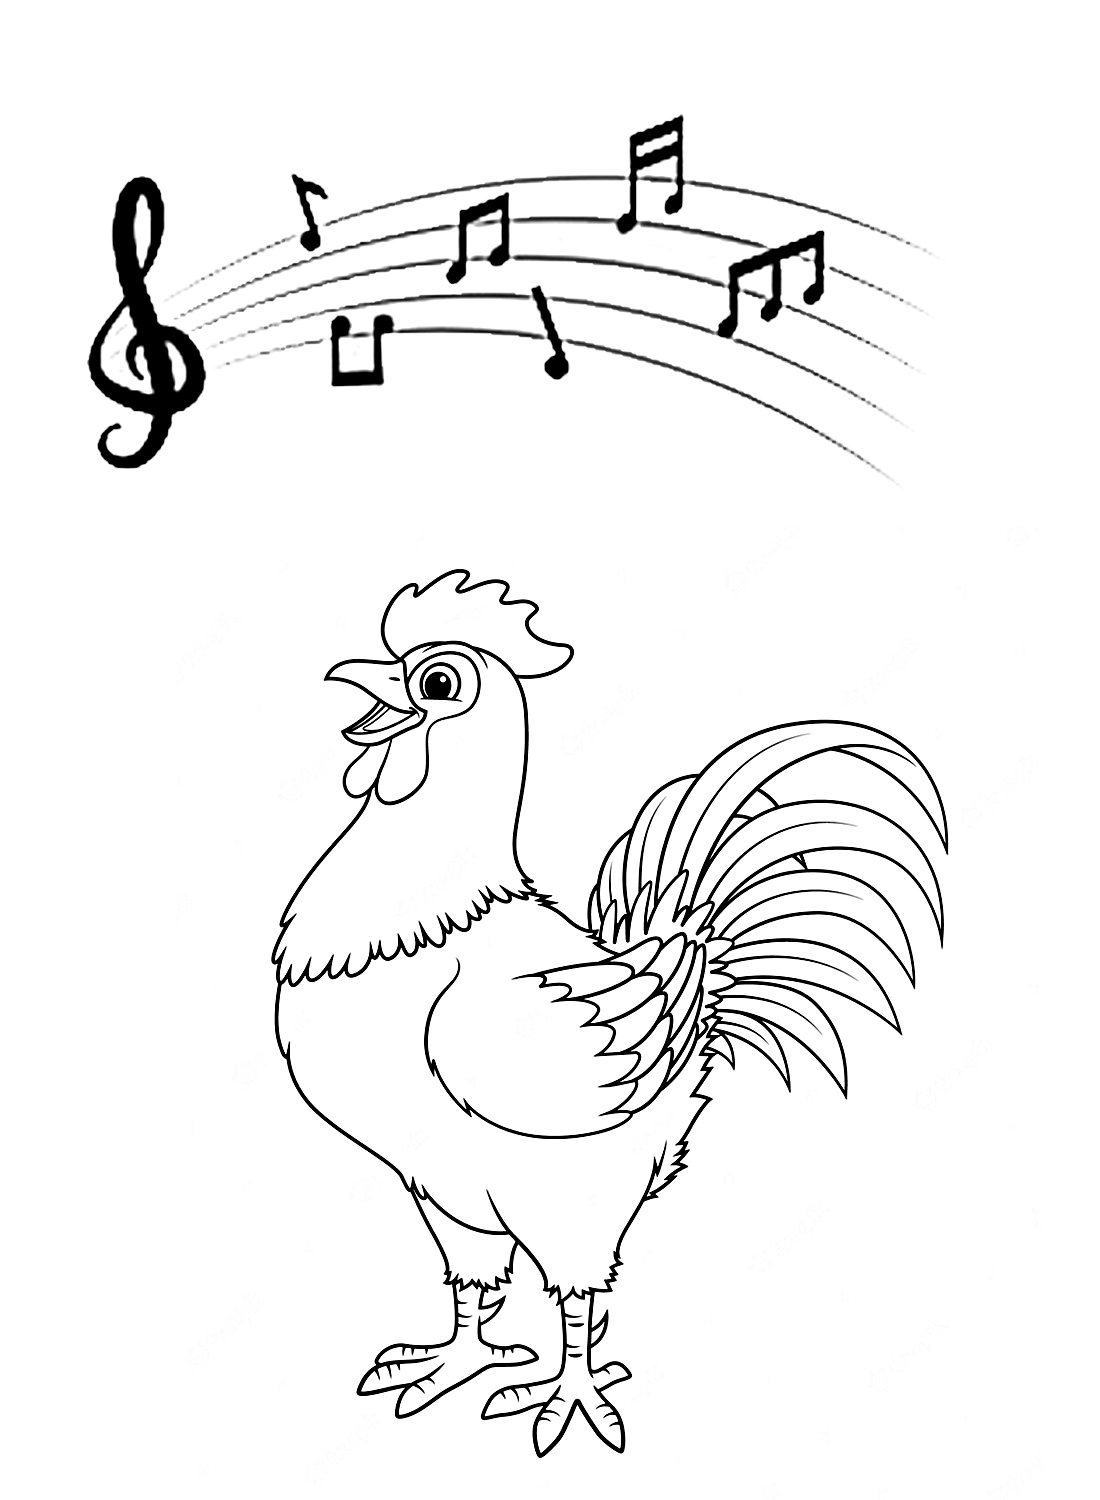 《公鸡》中一只会唱歌的公鸡